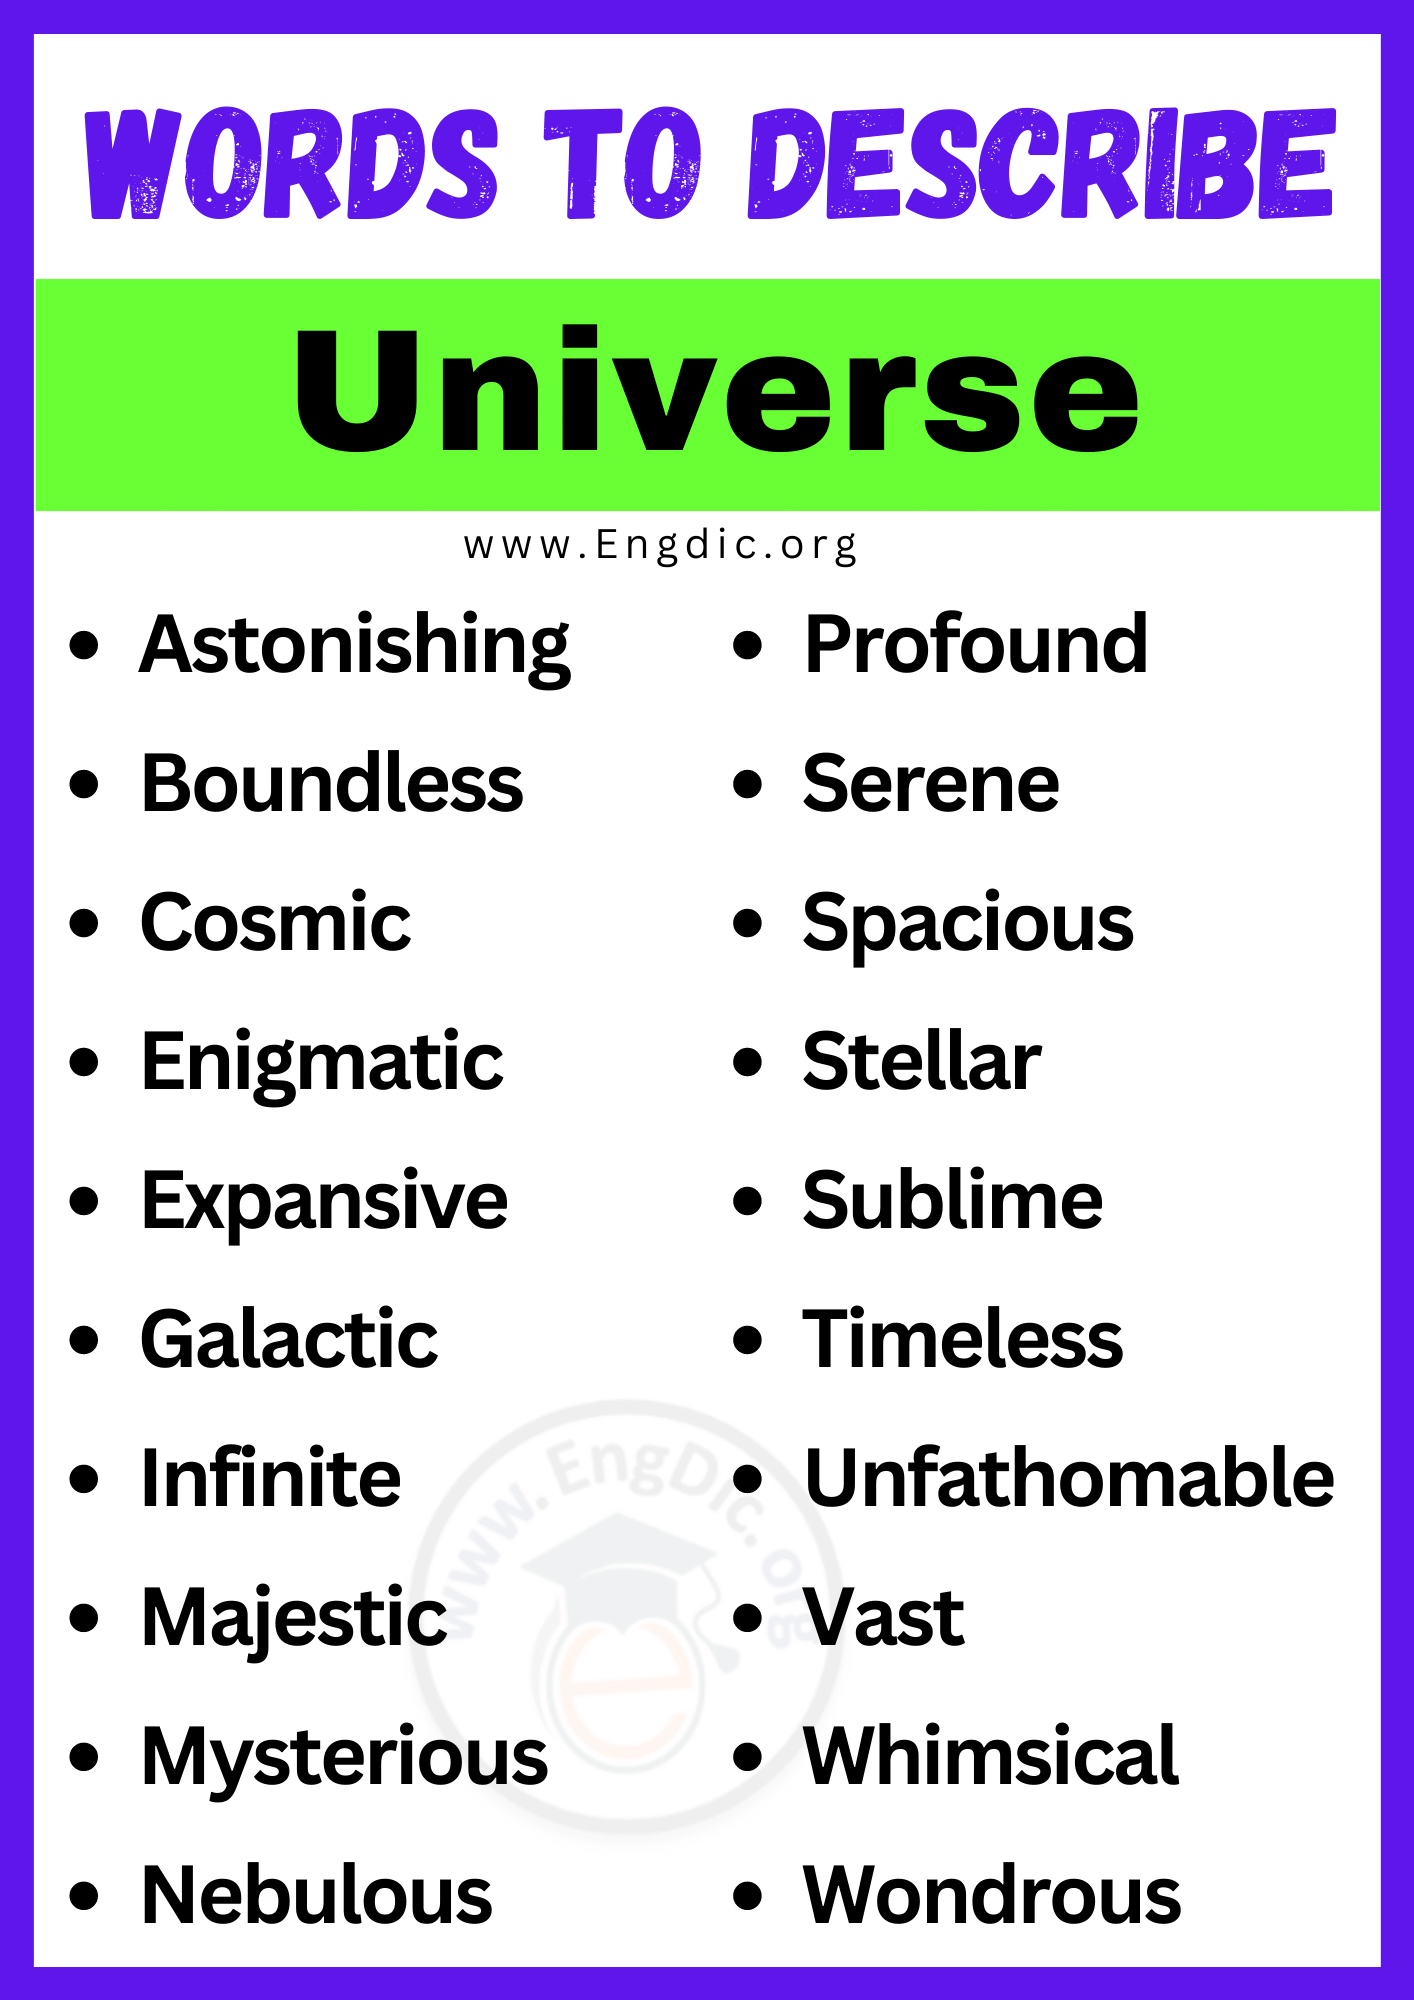 Words to Describe Universe